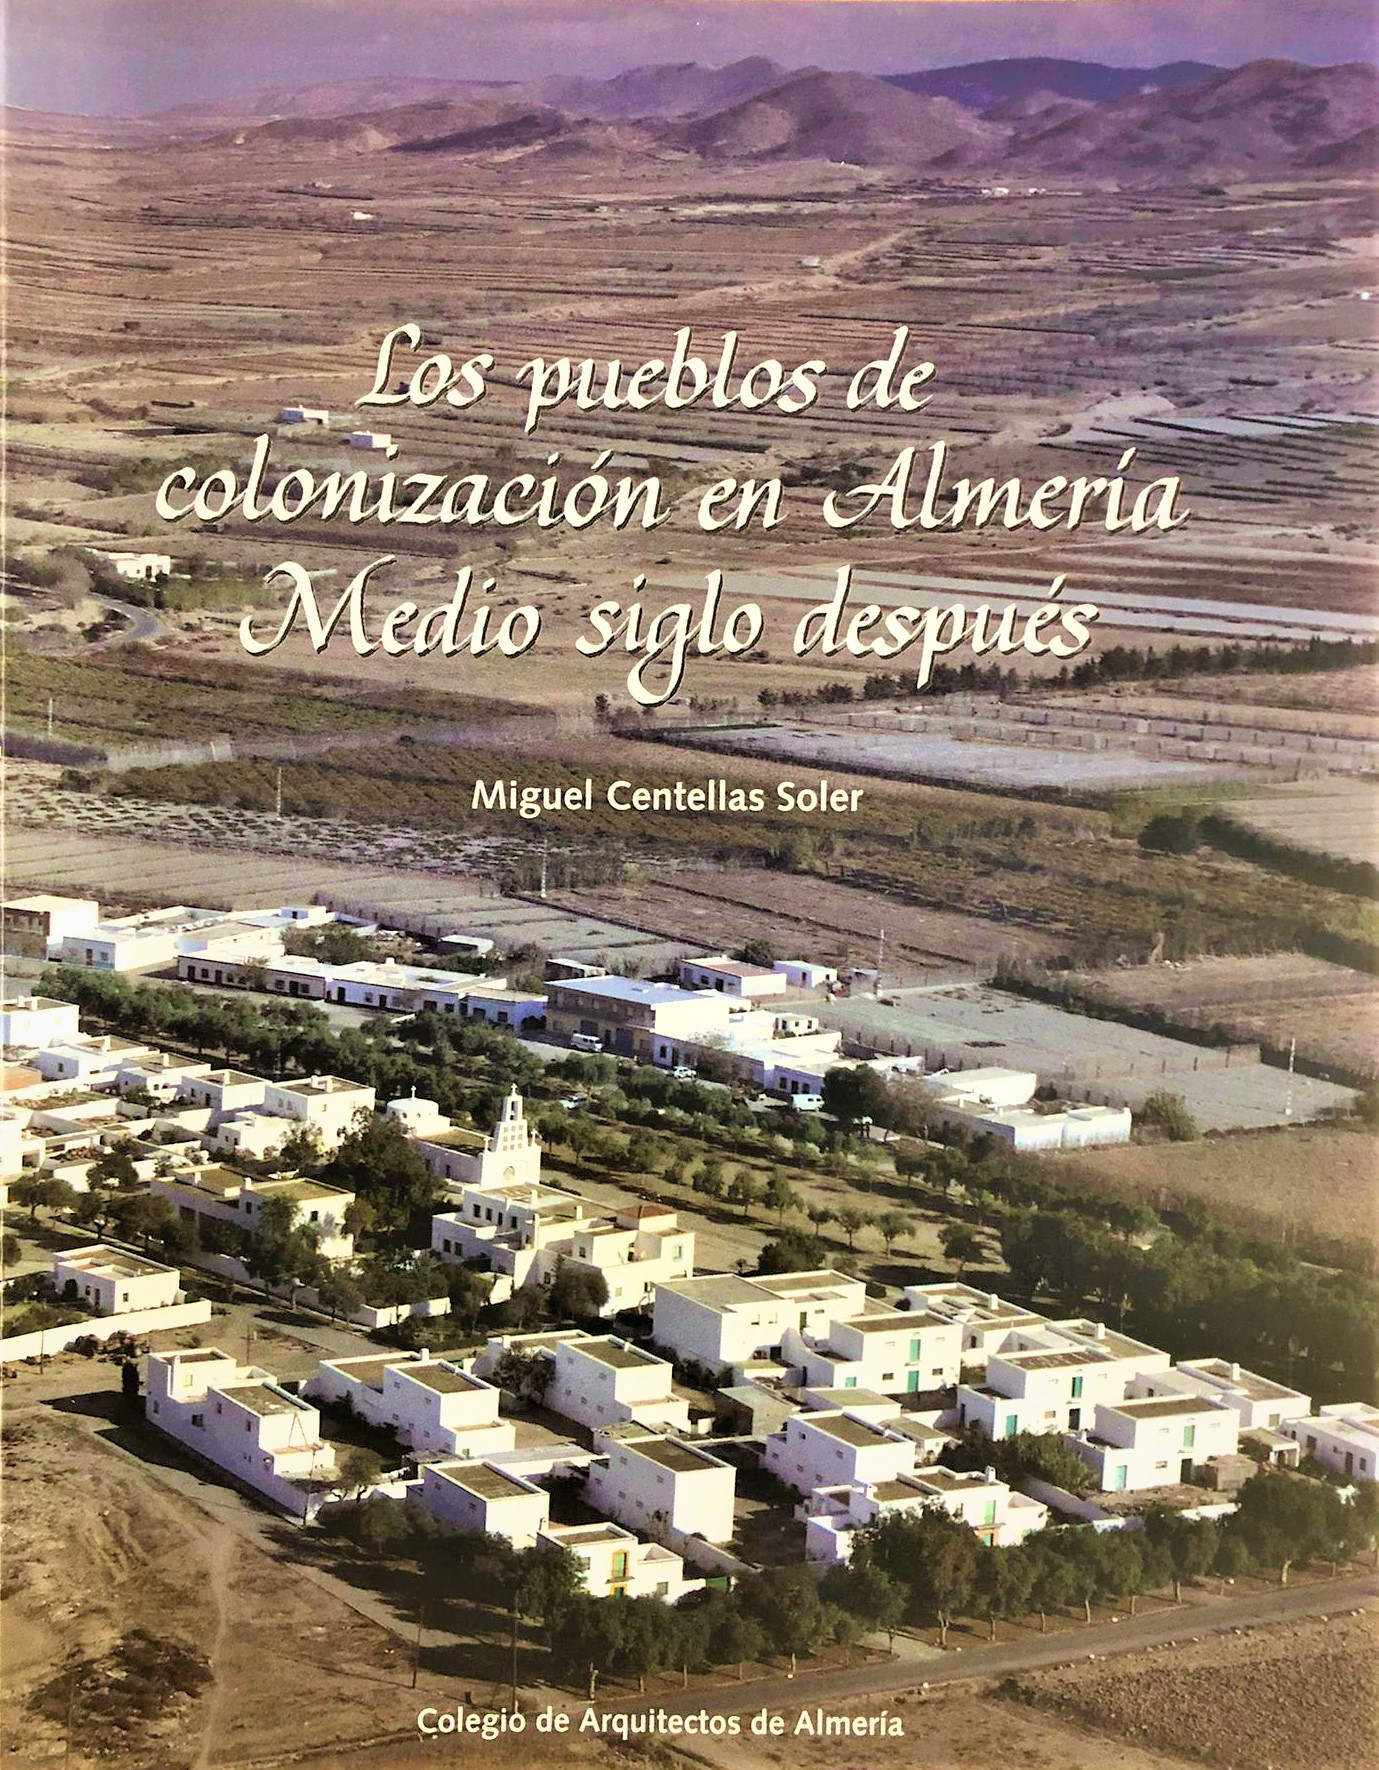 Los pueblos de colonización en Almería. Medio siglo después.